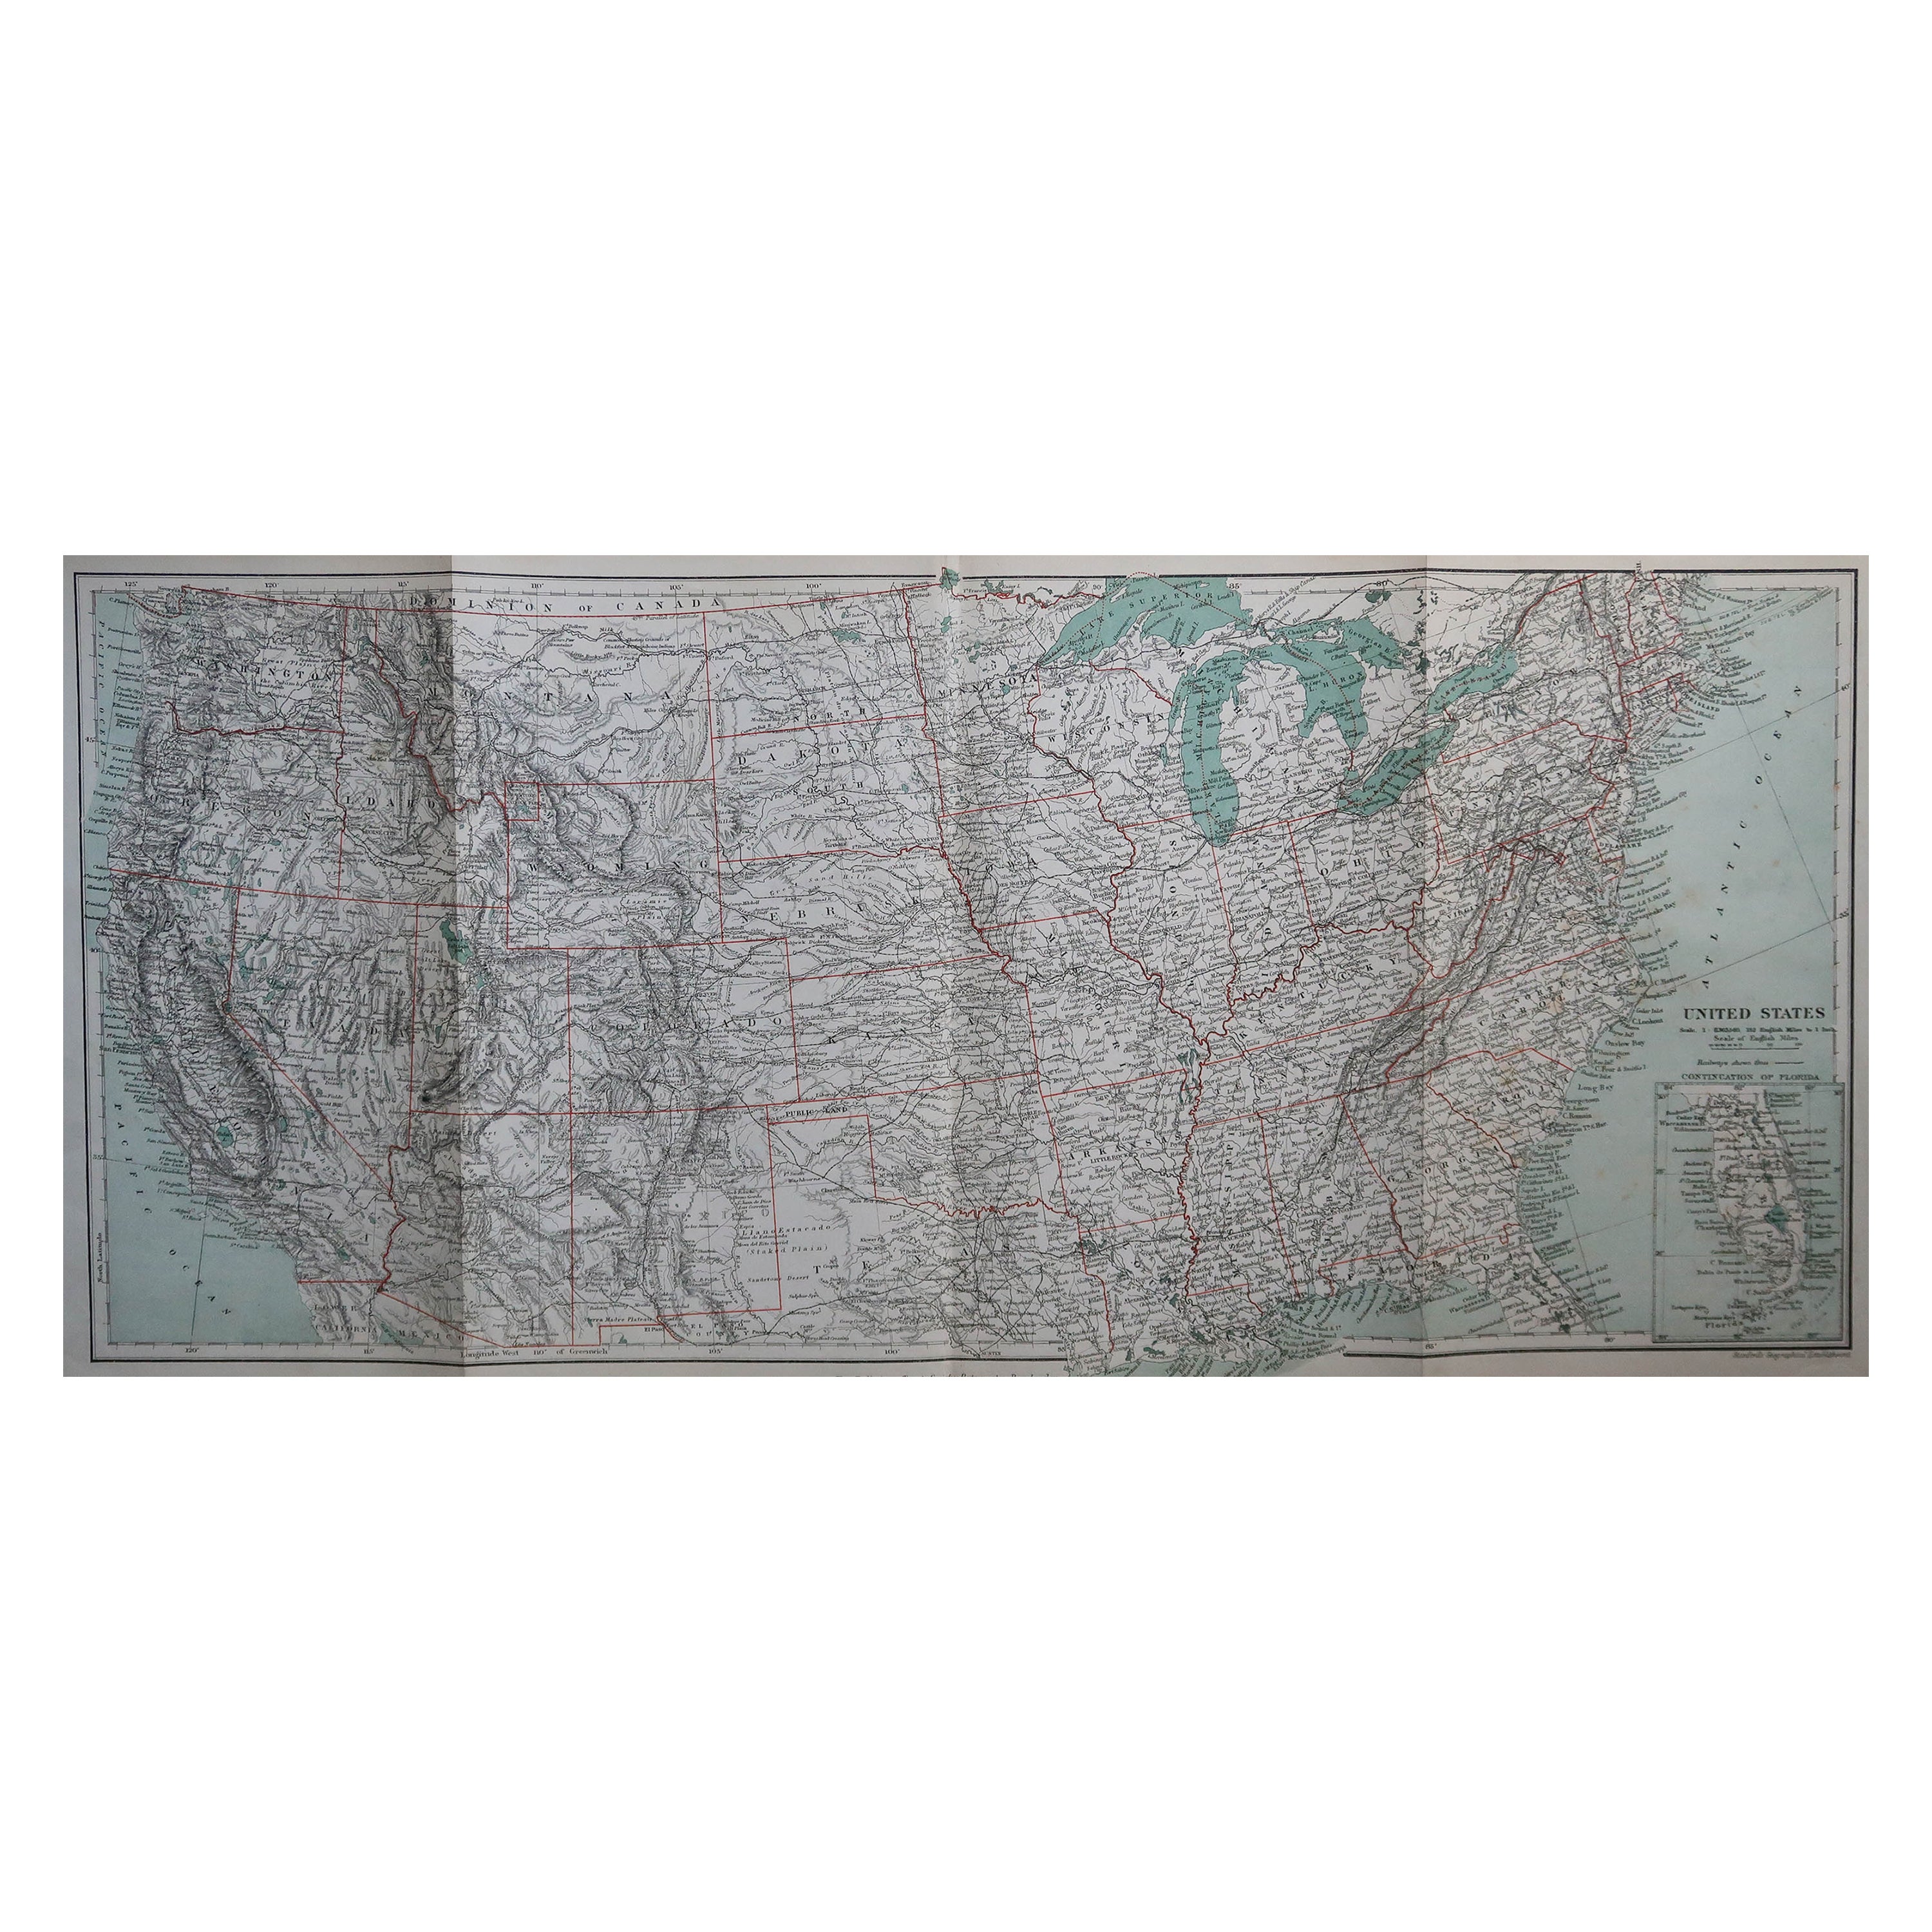 Originale antike Karte der Vereinigten Staaten von Amerika, um 1890